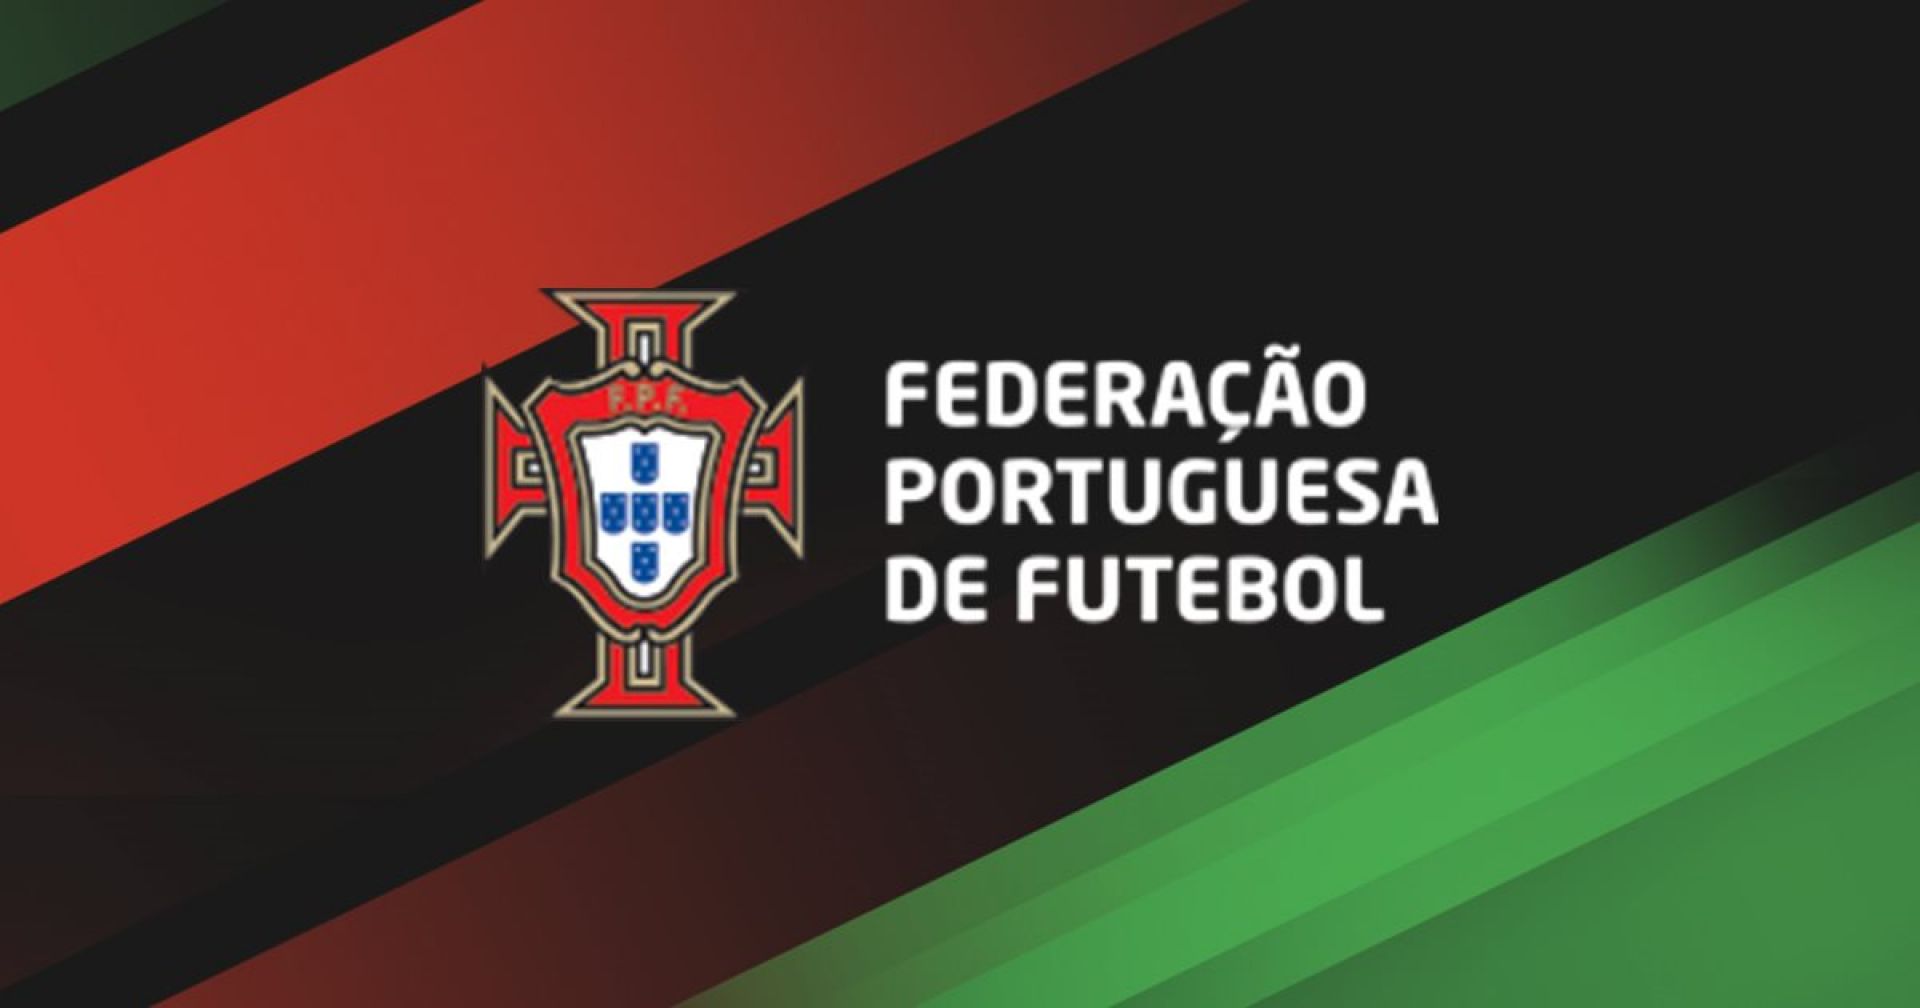 Faculdade de Motricidade Humana e Federação Portuguesa de Futebol colaboram na organização do mestrado em Futebol